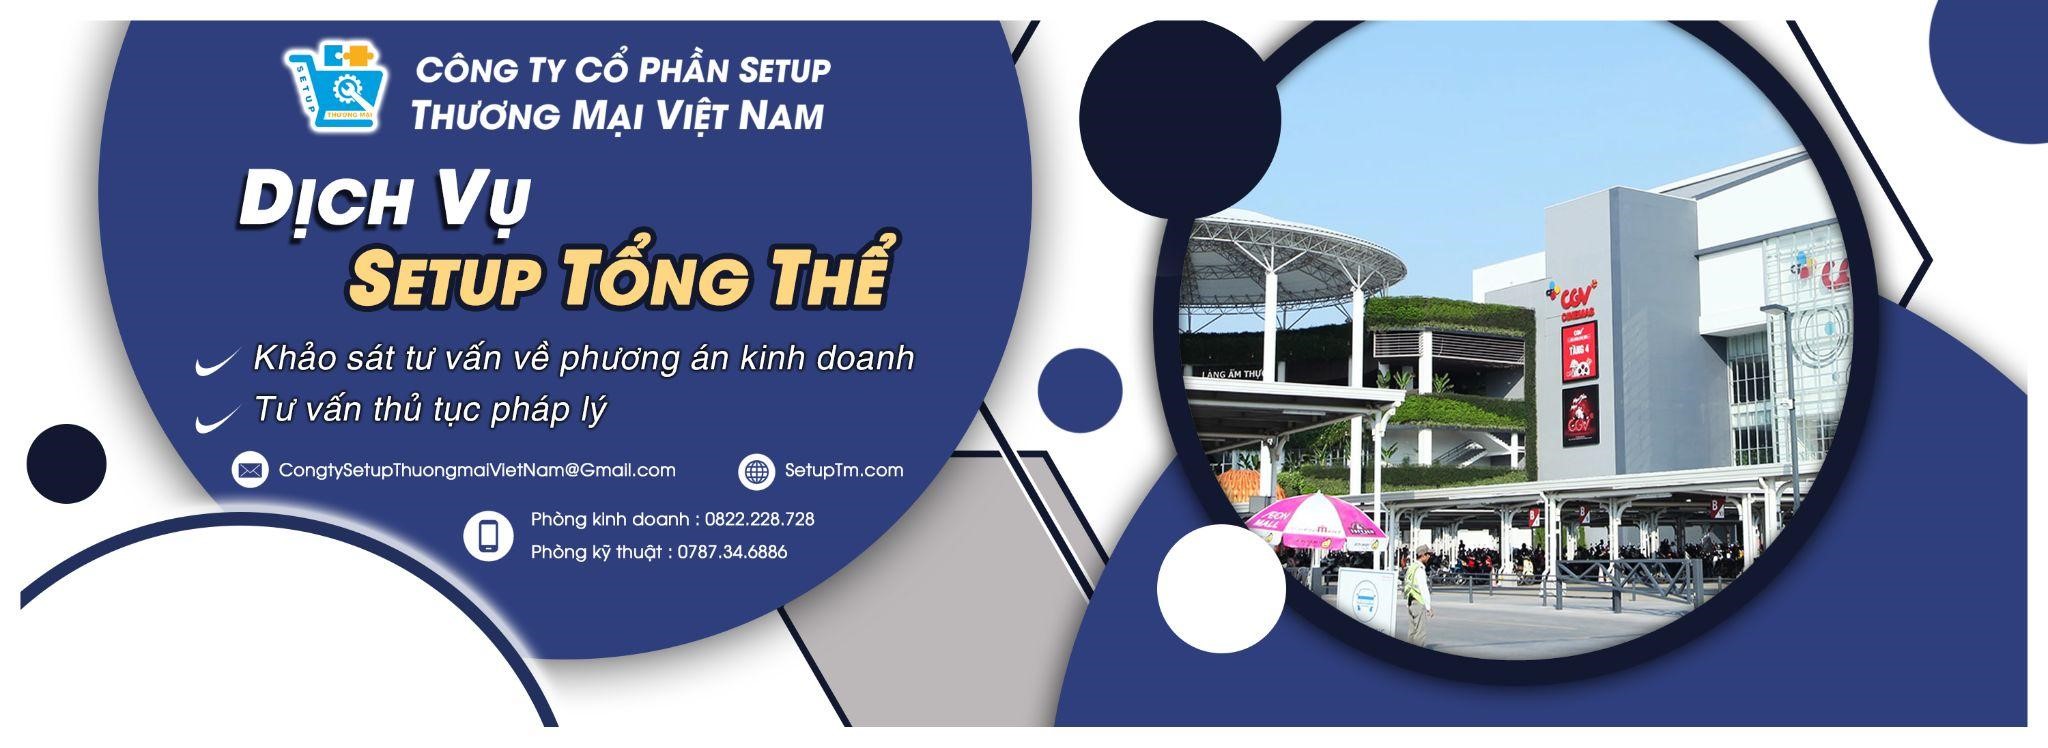 Công ty cổ phần setup thương mại Việt Nam dày dặn kinh nghiệm trong quản lý, xây dựng hệ thống chuỗi siêu thị bán lẻ là đơn vị tư vấn hàng đầu trong việc mở siêu thị